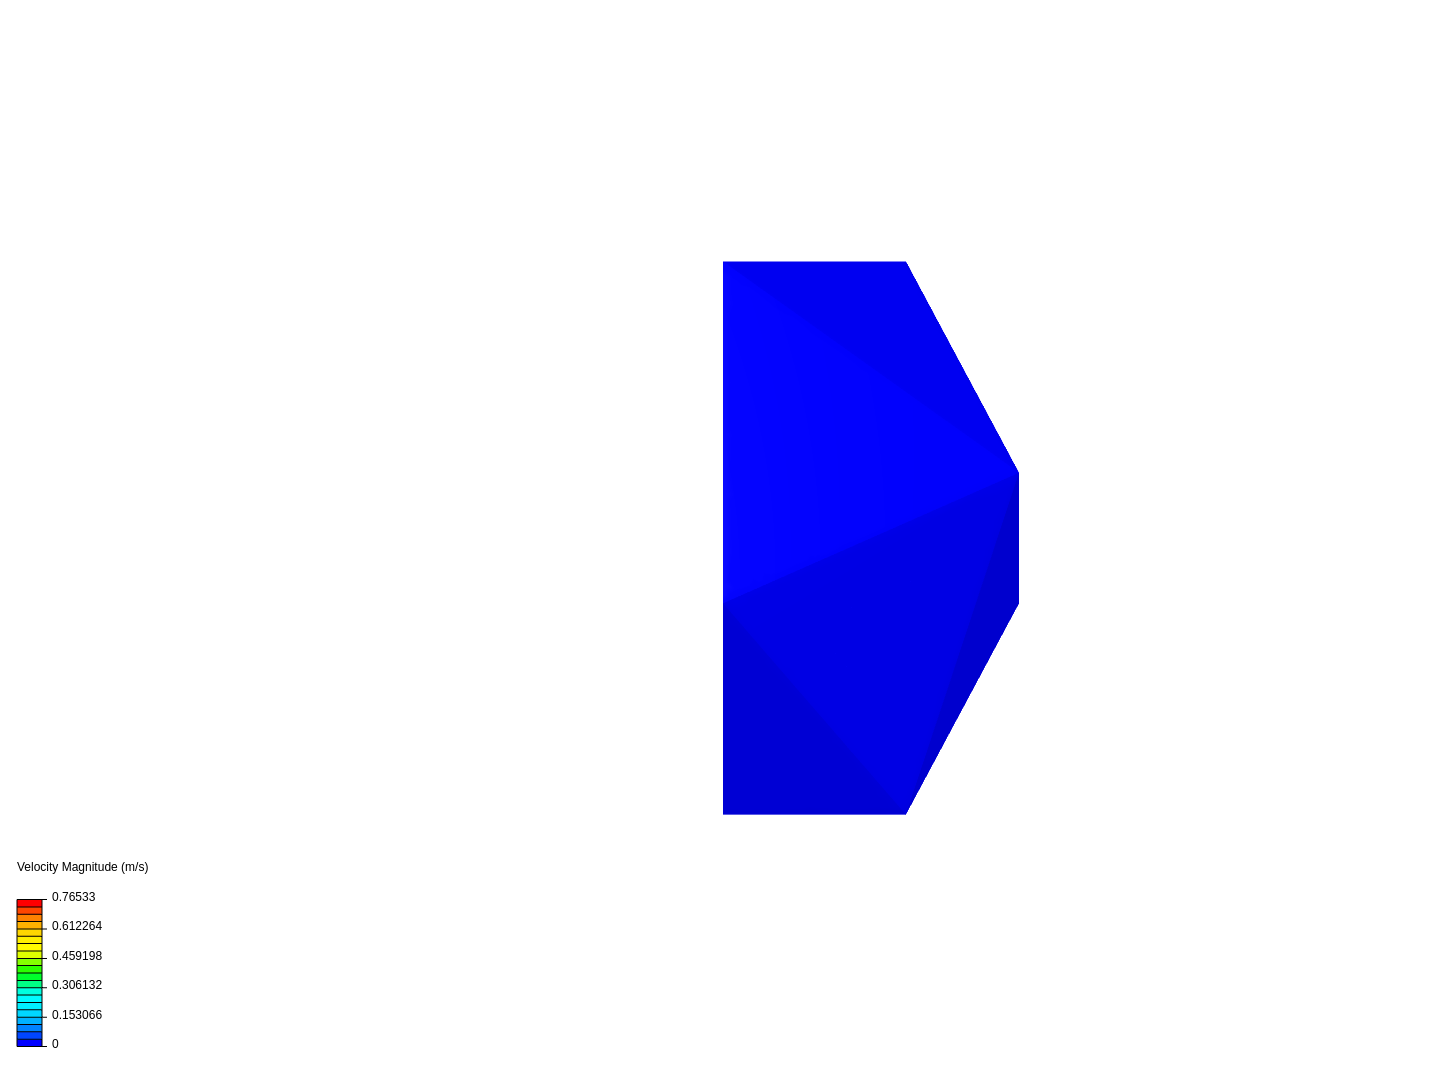 Icasohaedron Space module THERMODYNAMICS image